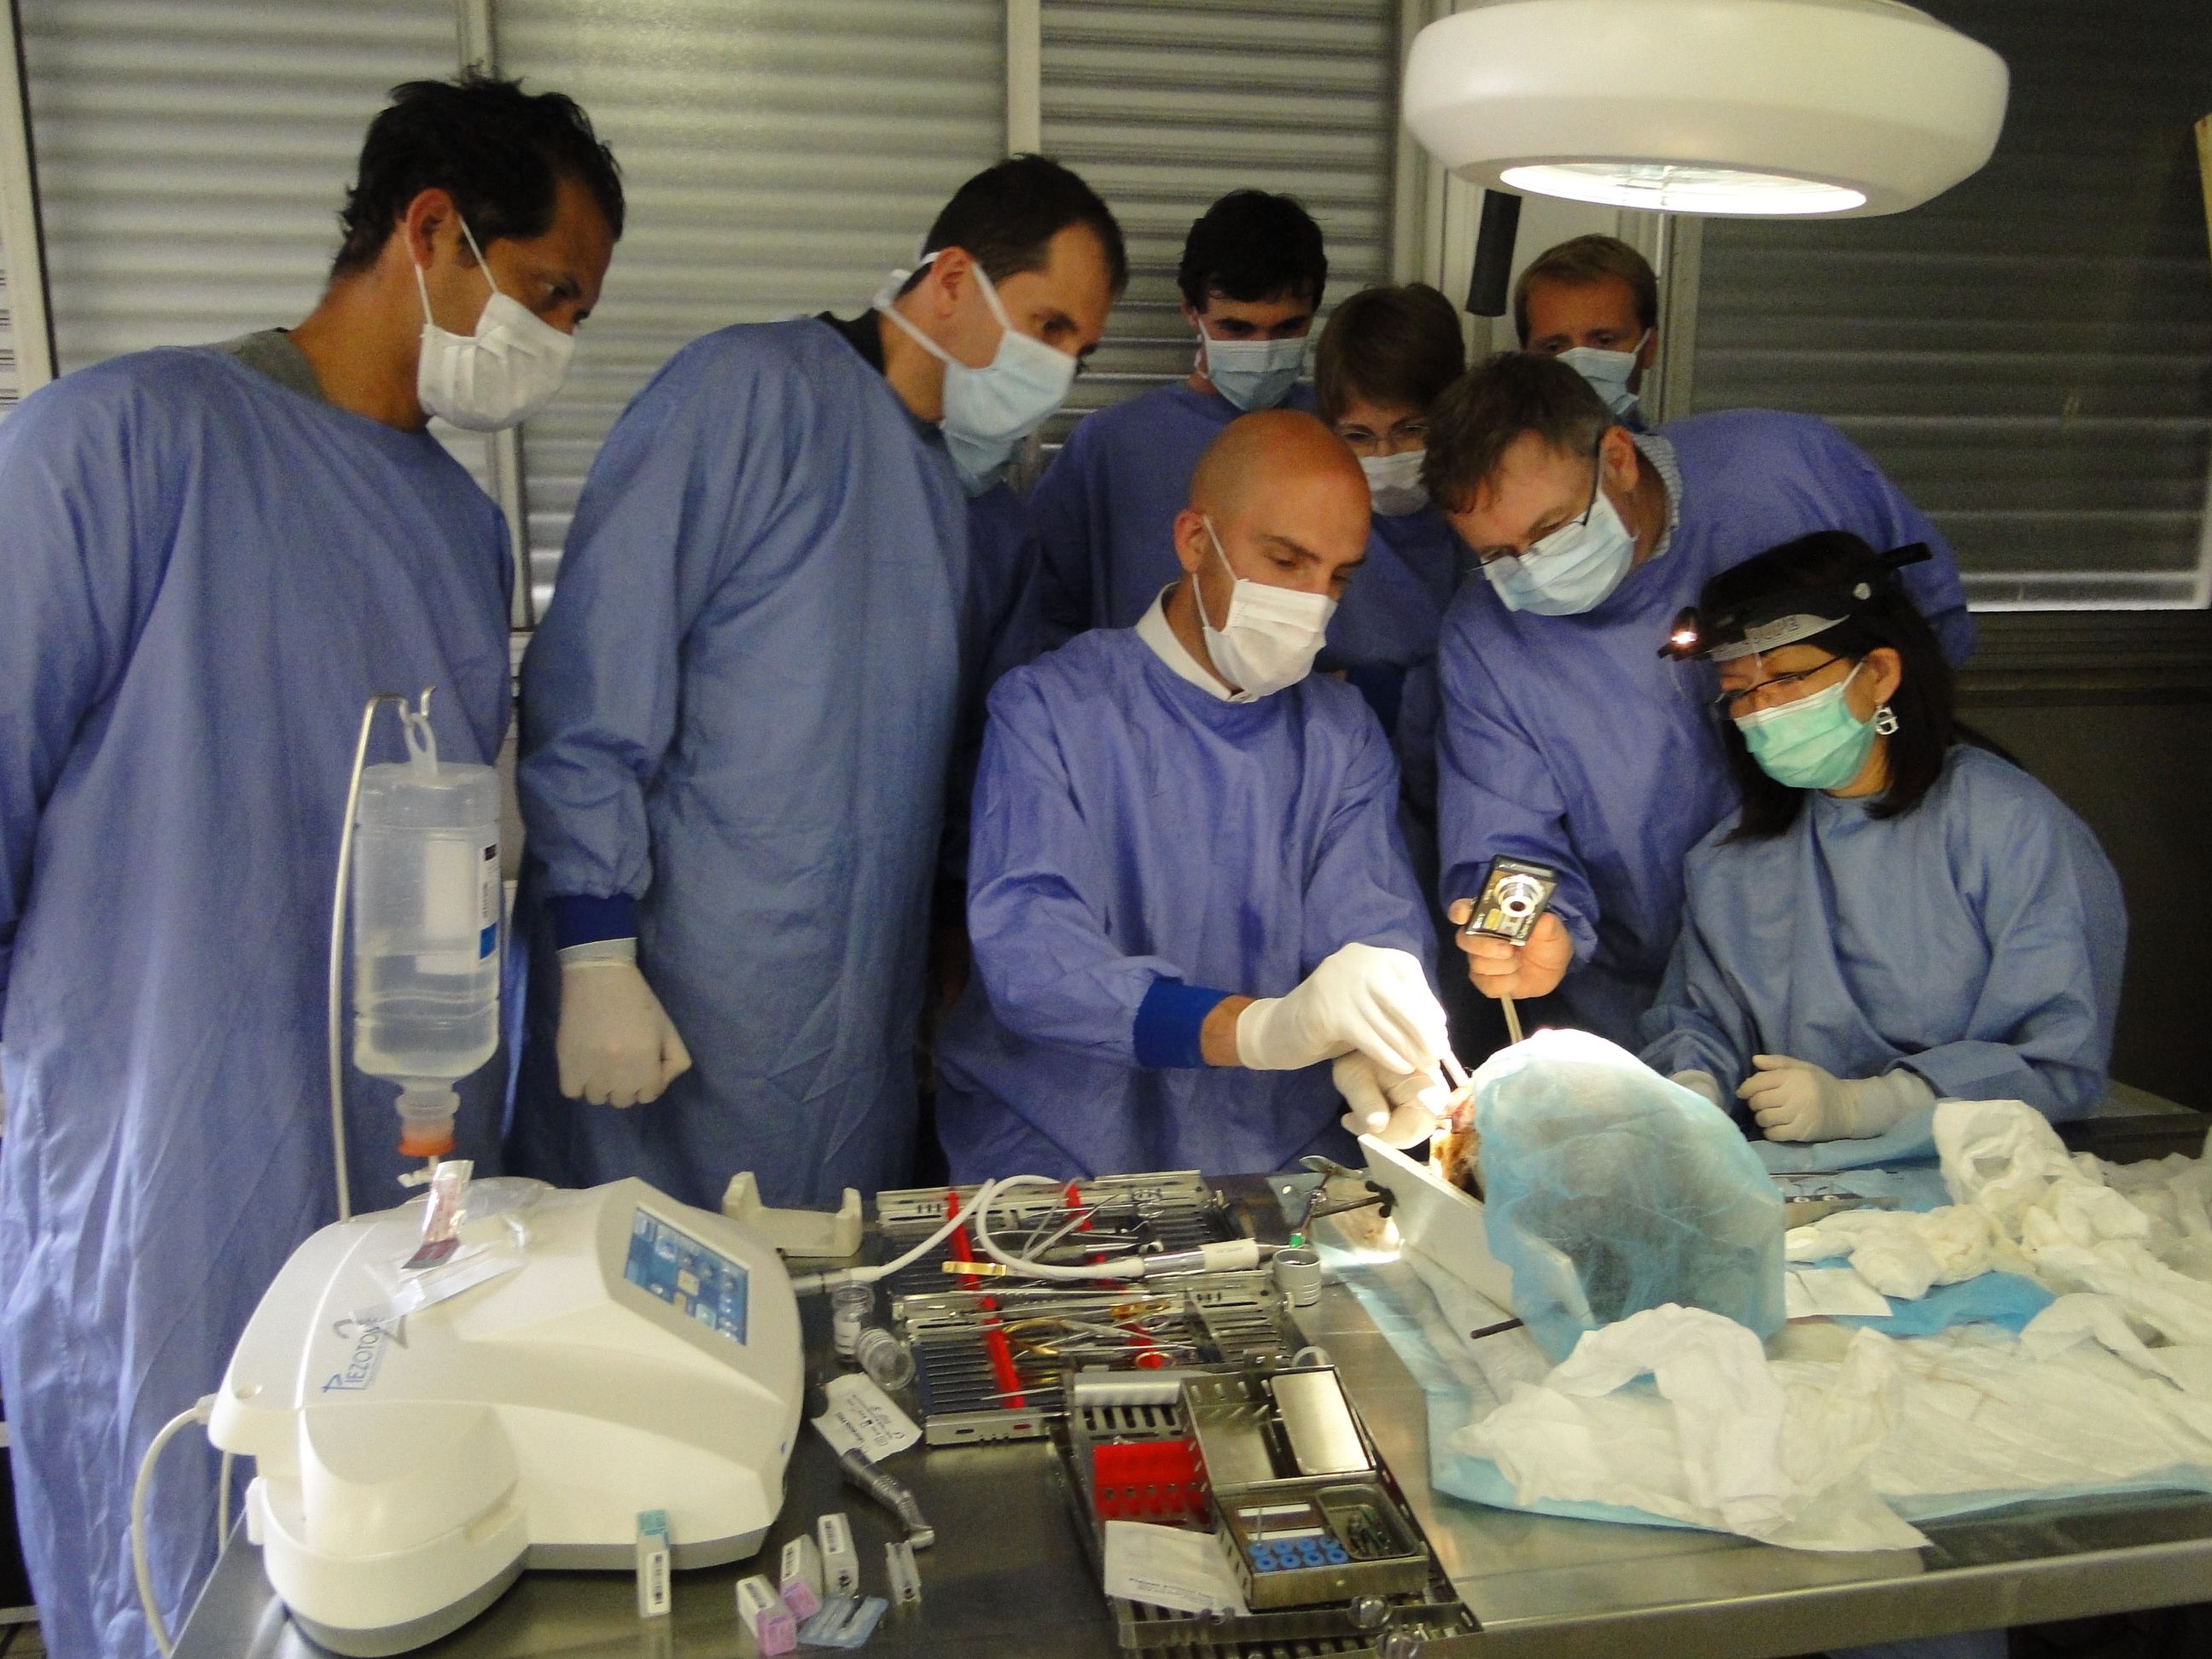 Travaux pratiques de chirurgie en implantologie dentaire